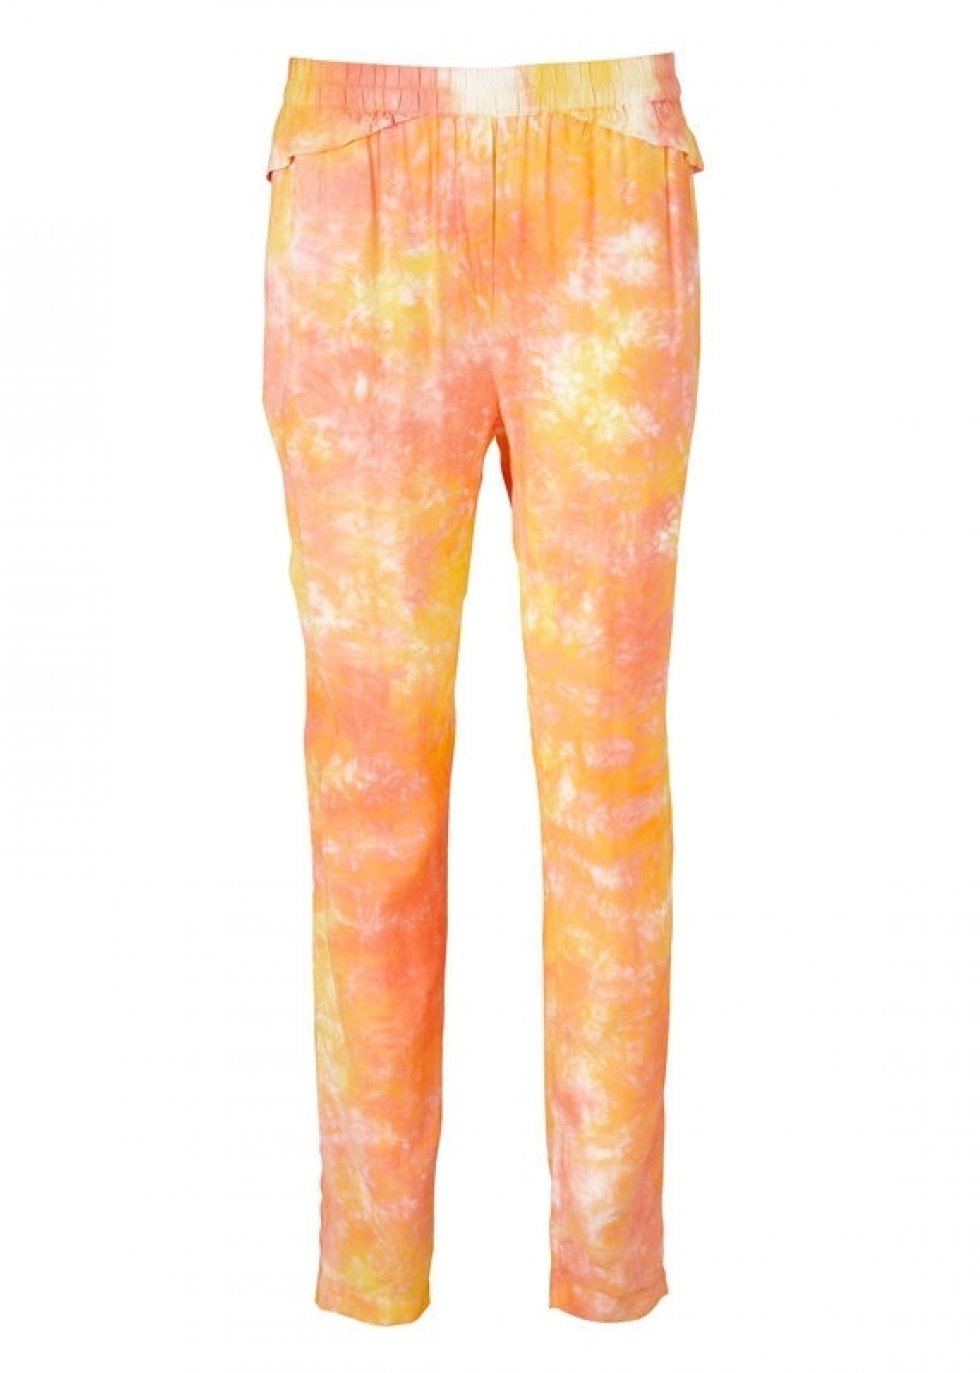 Fede bukser fra Modström i let gullige og orange toner. - Trend 2013: Orange og gul